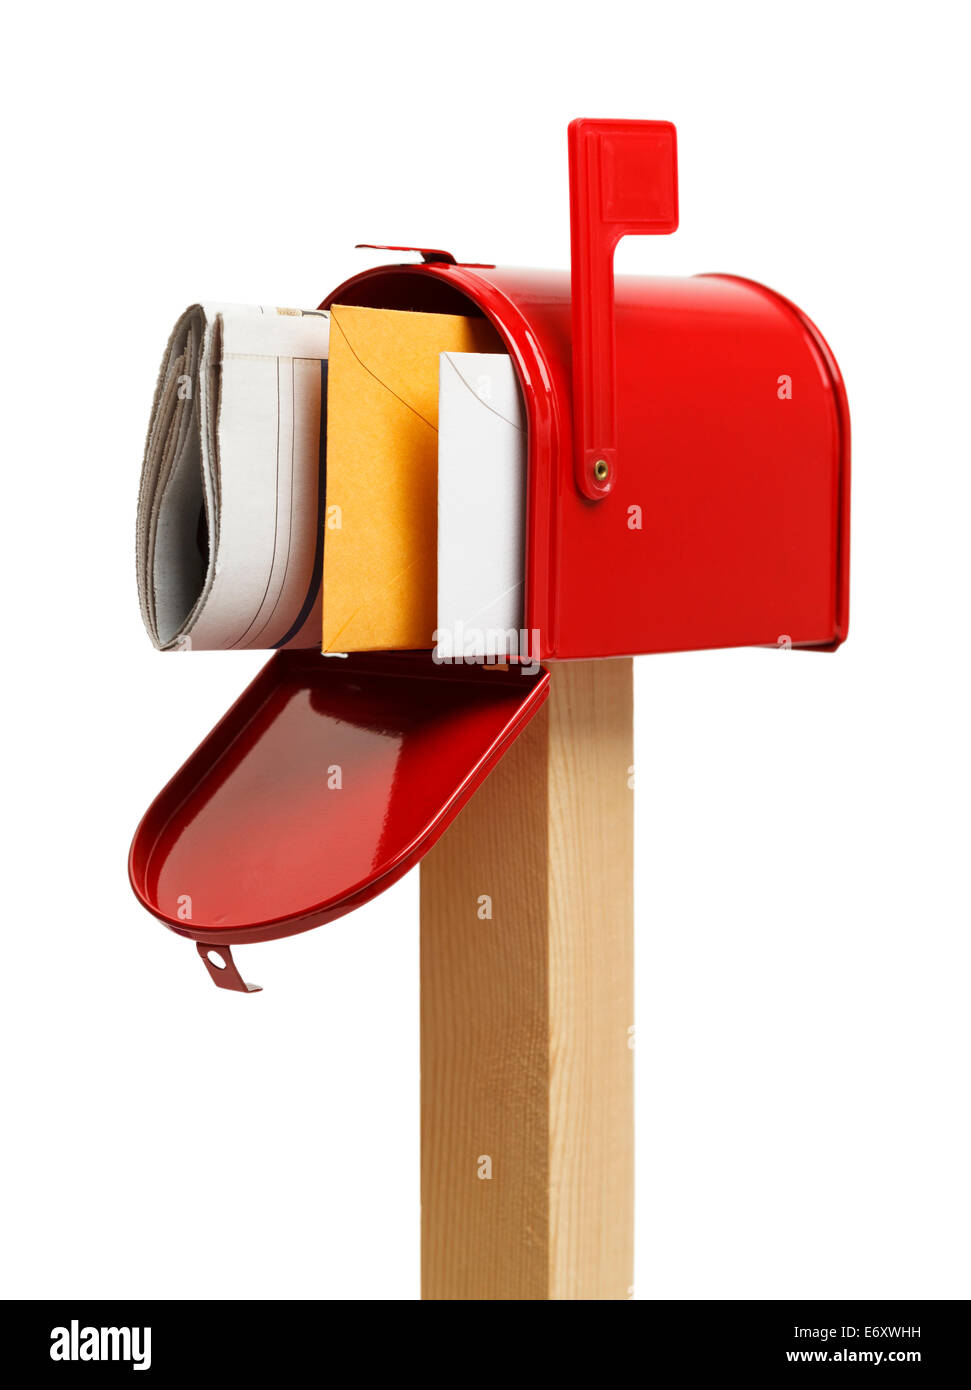 Mit Mail in öffnen Sie roten Briefkasten und kennzeichnen Sie Isolated on White Background. Stockfoto